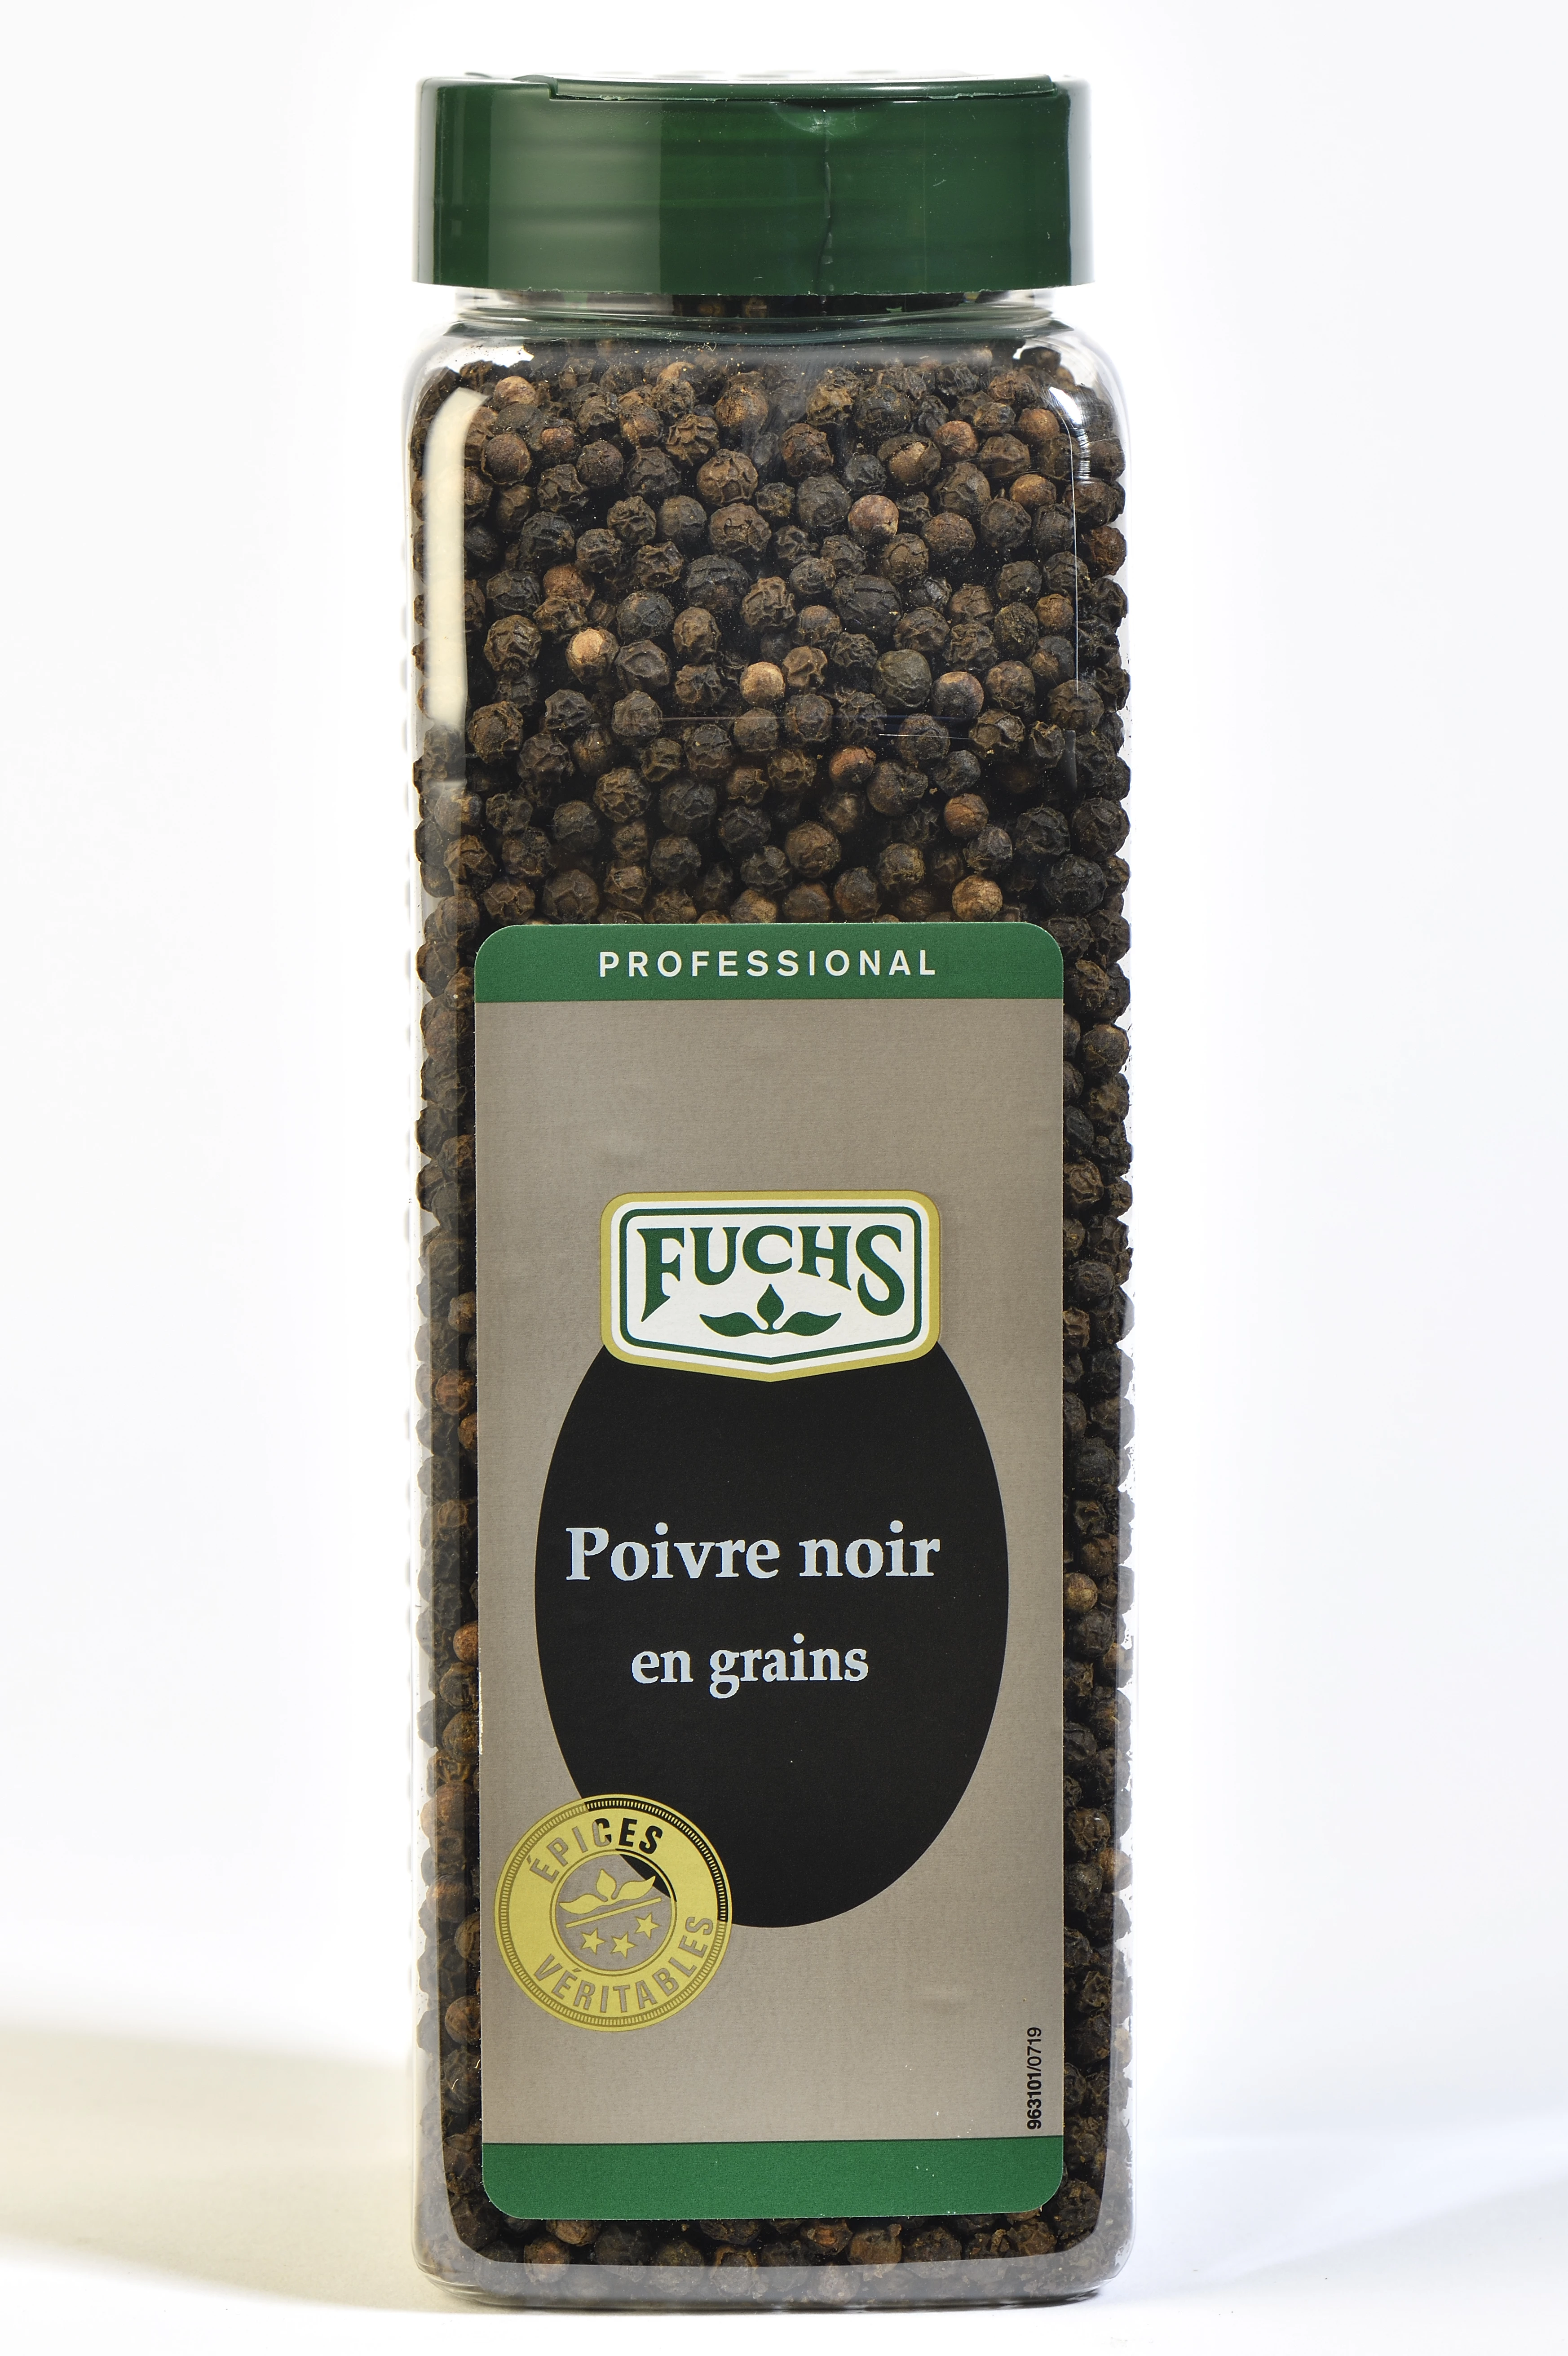 Black Pepper in Grains, 500g - FUCHS